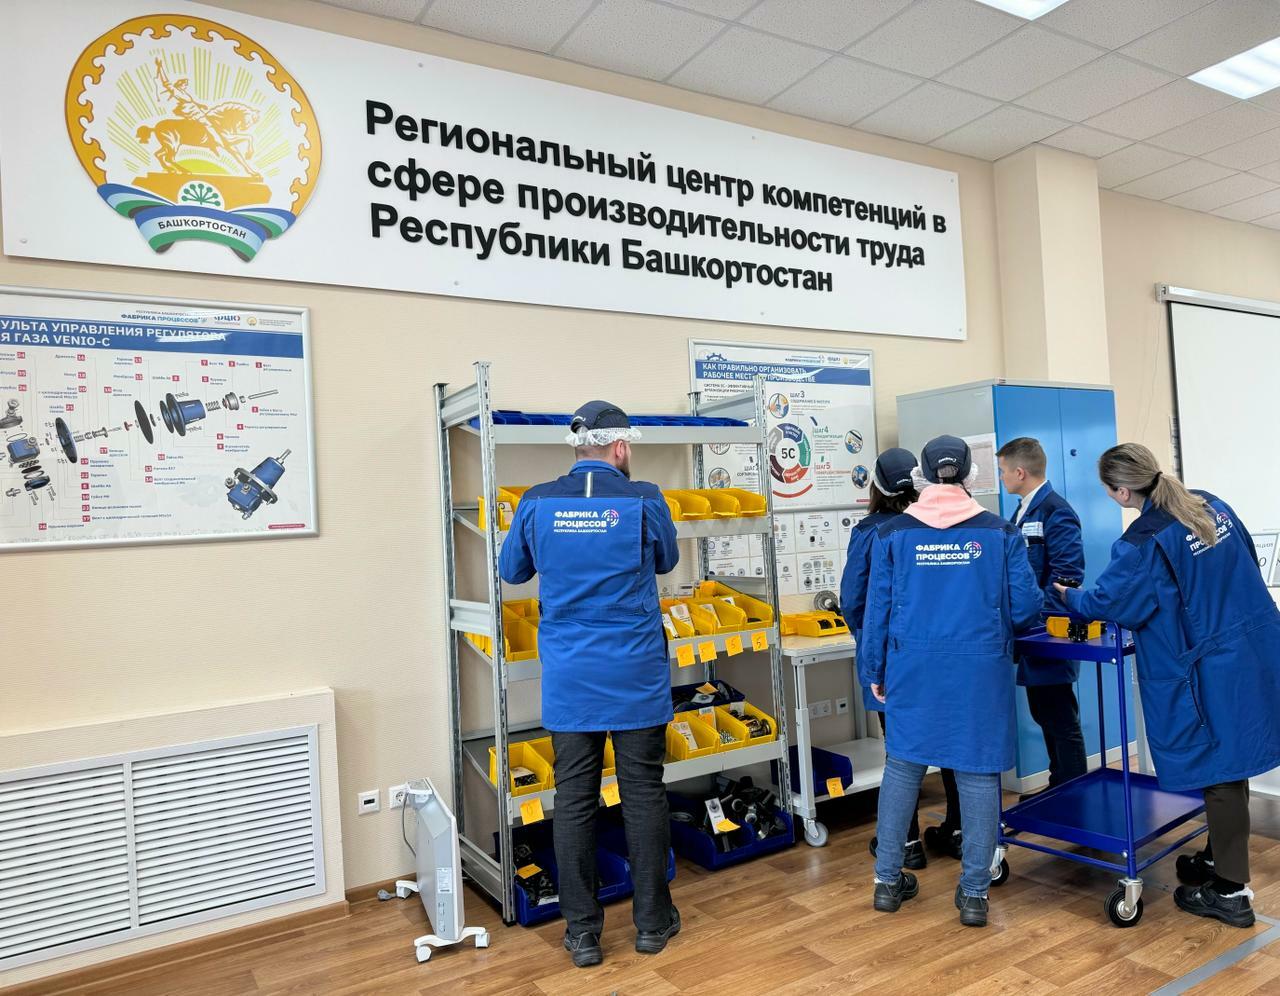 В Башкортостане на базе Регионального центра компетенций появится «Фабрика логистических процессов»